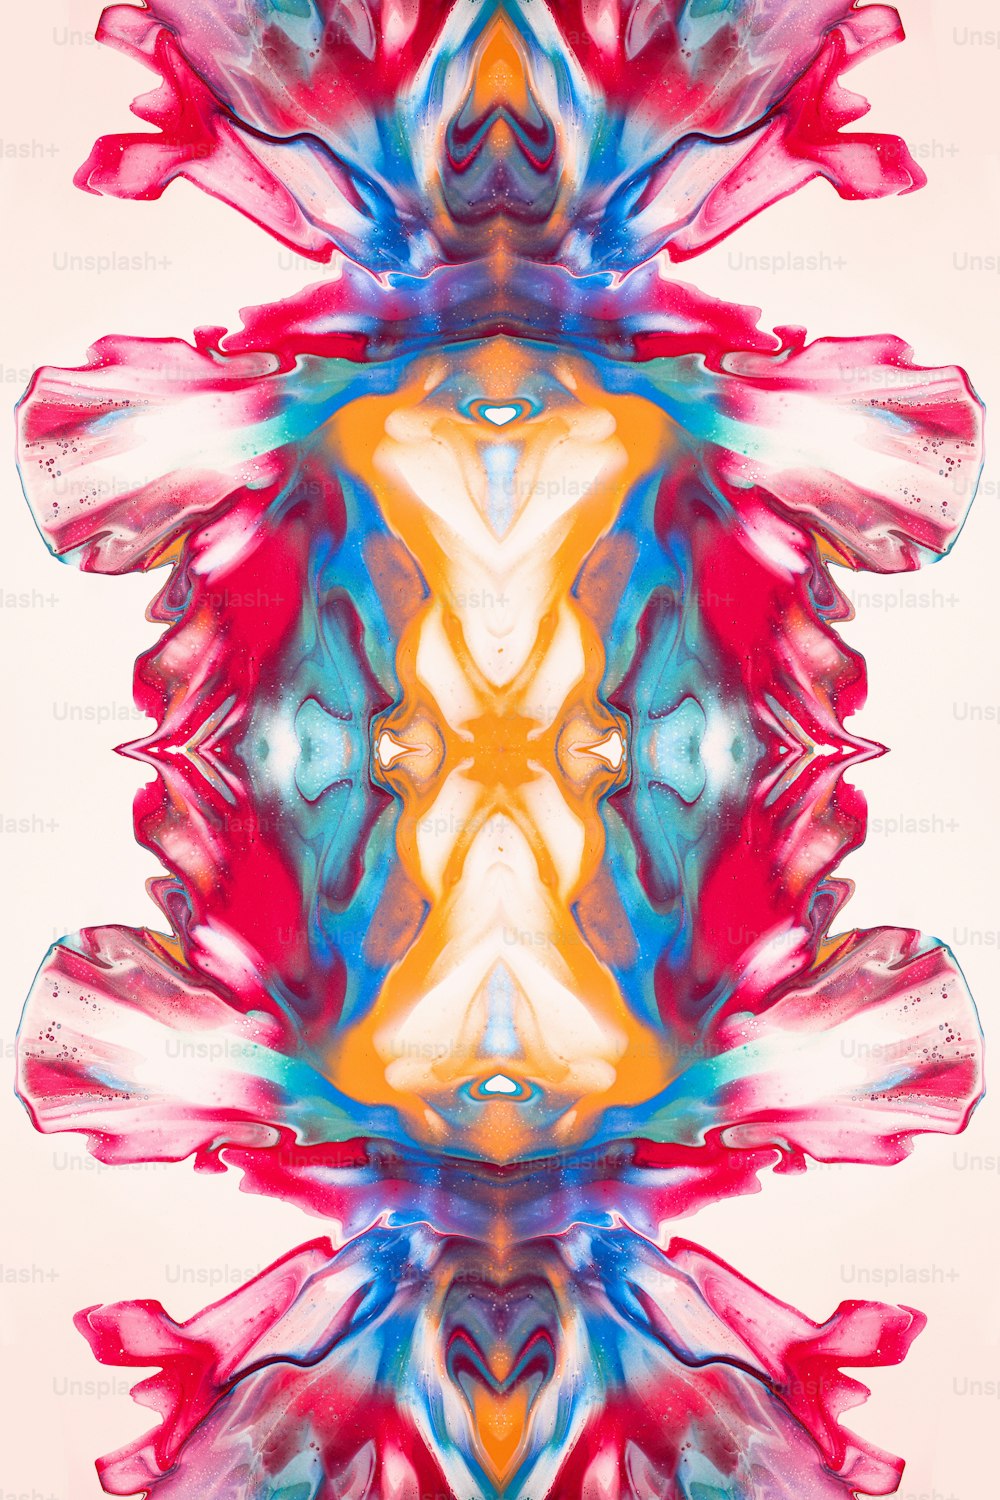 Un'immagine multicolore di un design astratto